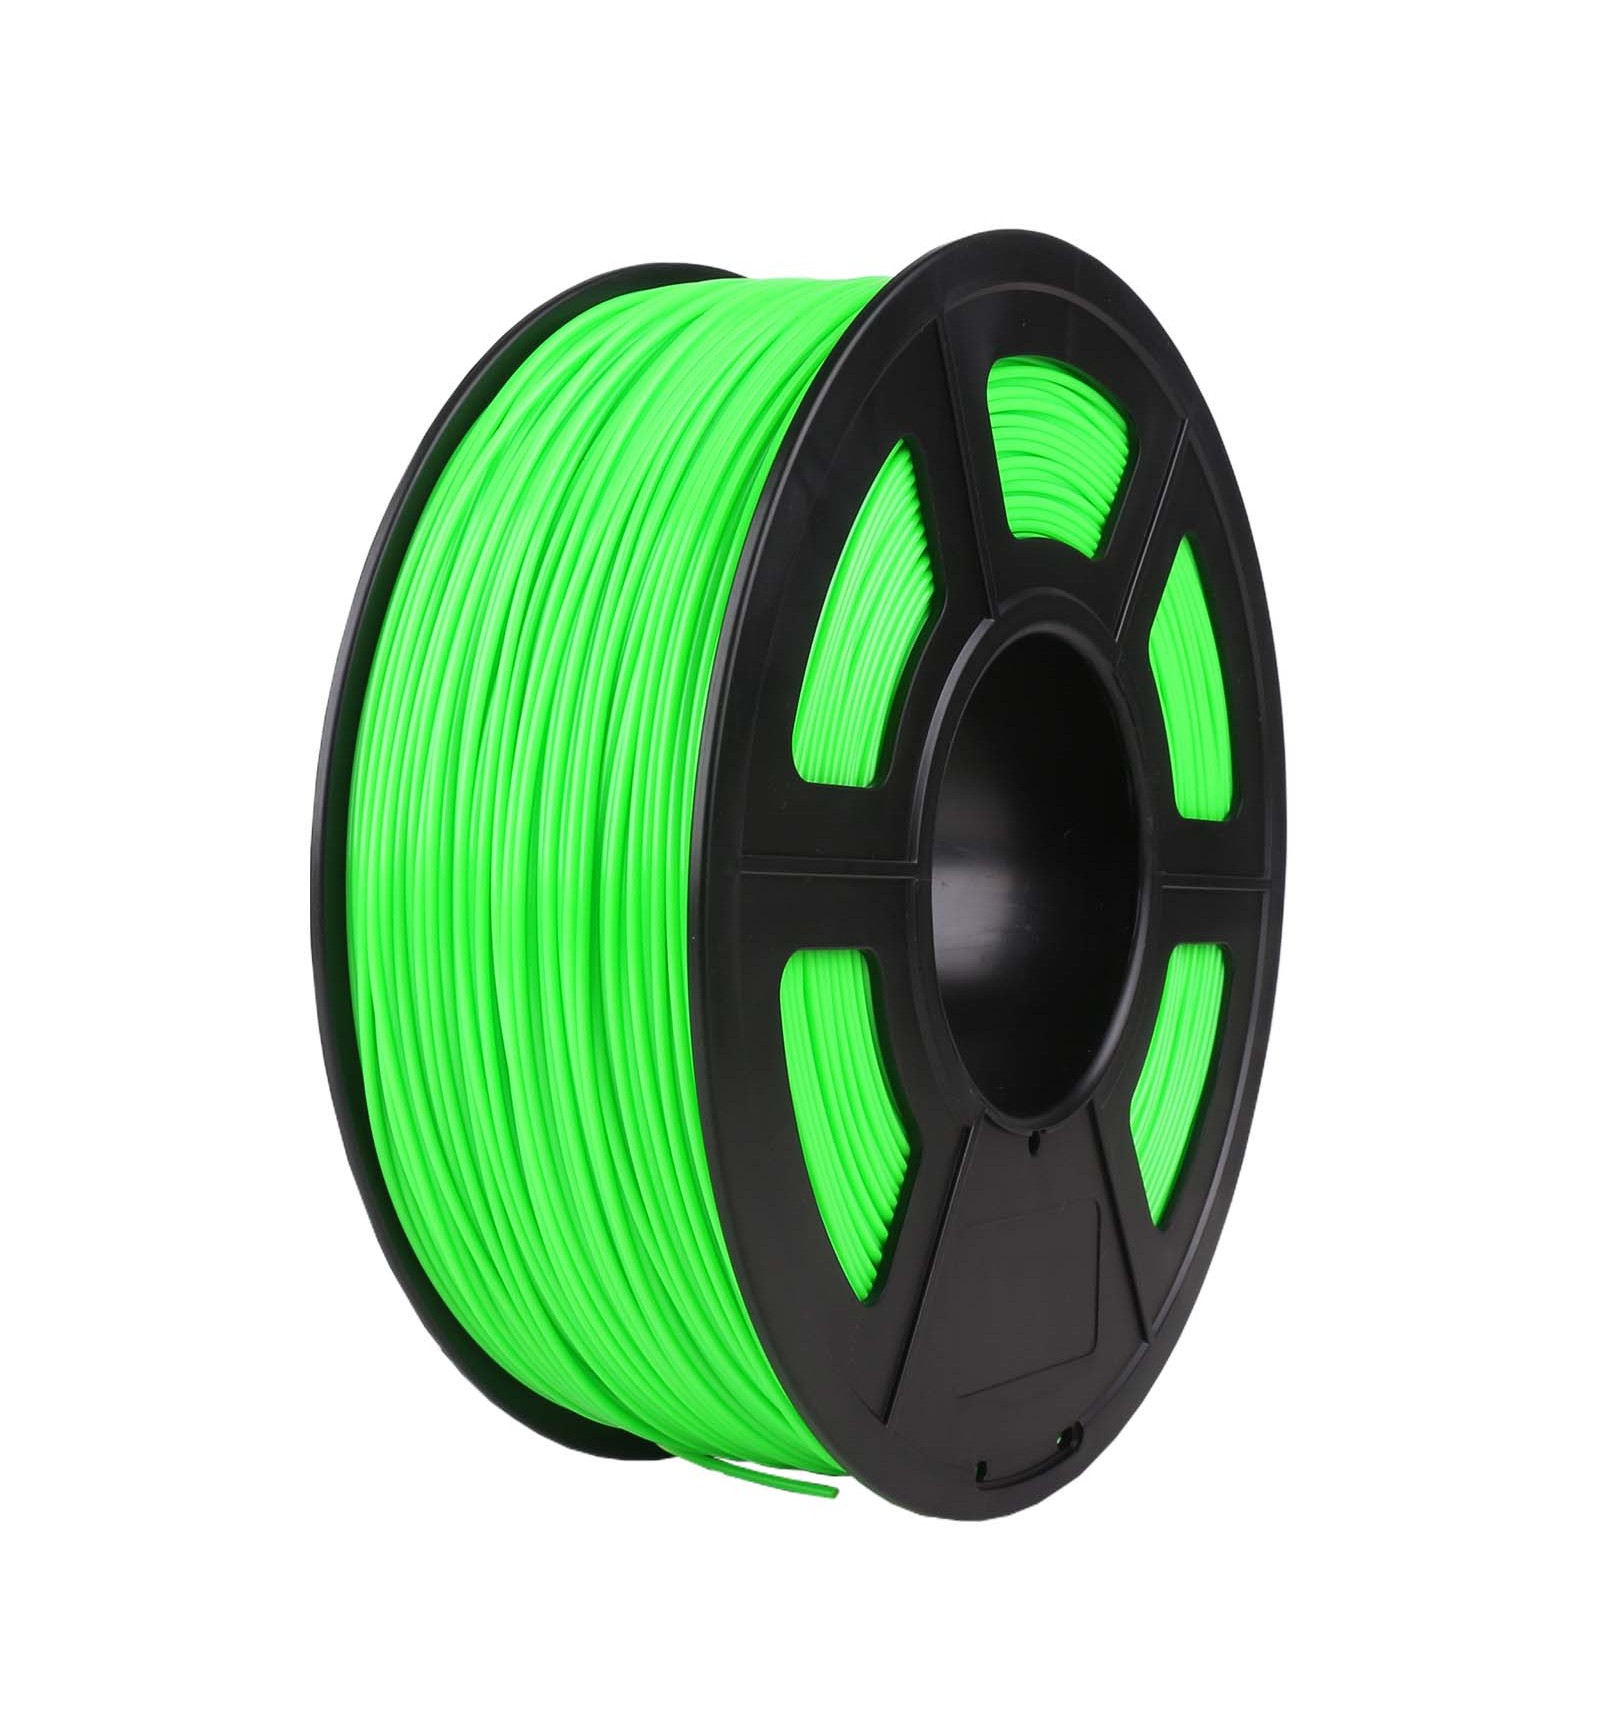 SUNLU ABS 3D Printer Filament 1.75mm 1KG